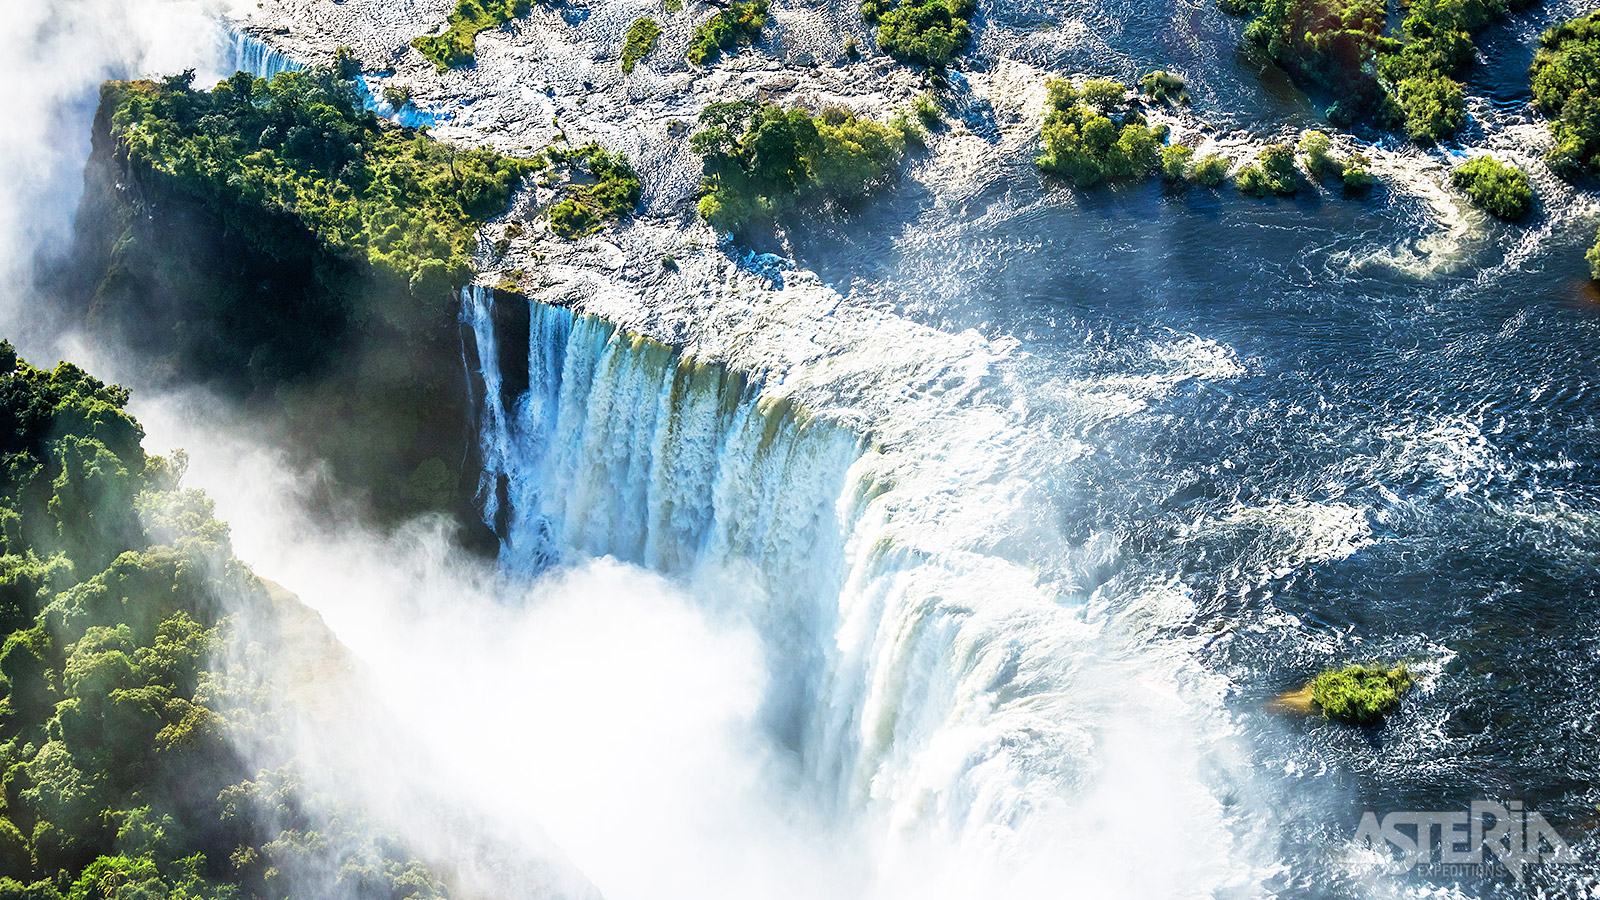 De indrukwekkende Victoria Falls vormen de ideale afsluiter van deze tentsafari